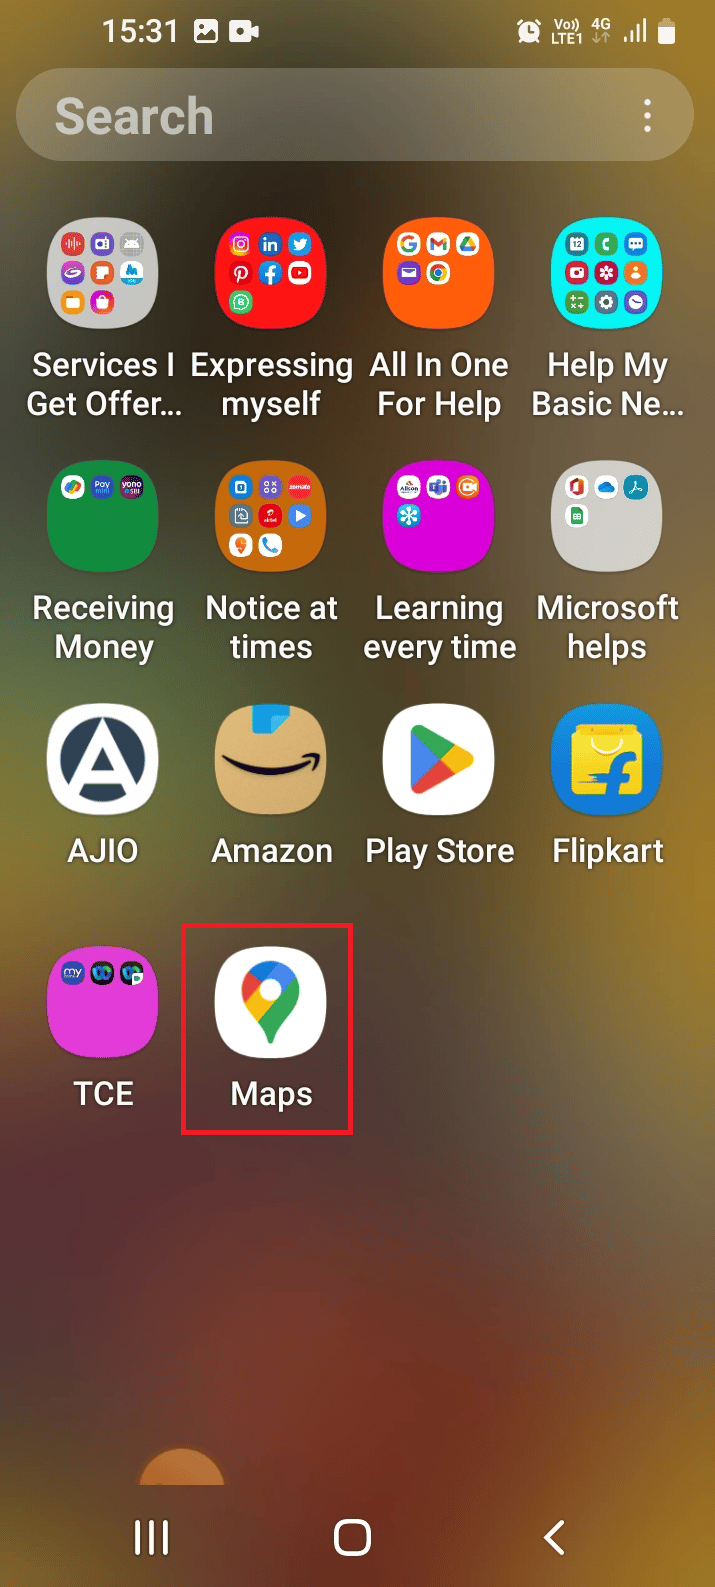 Faites glisser l'écran vers le haut et ouvrez l'application Maps